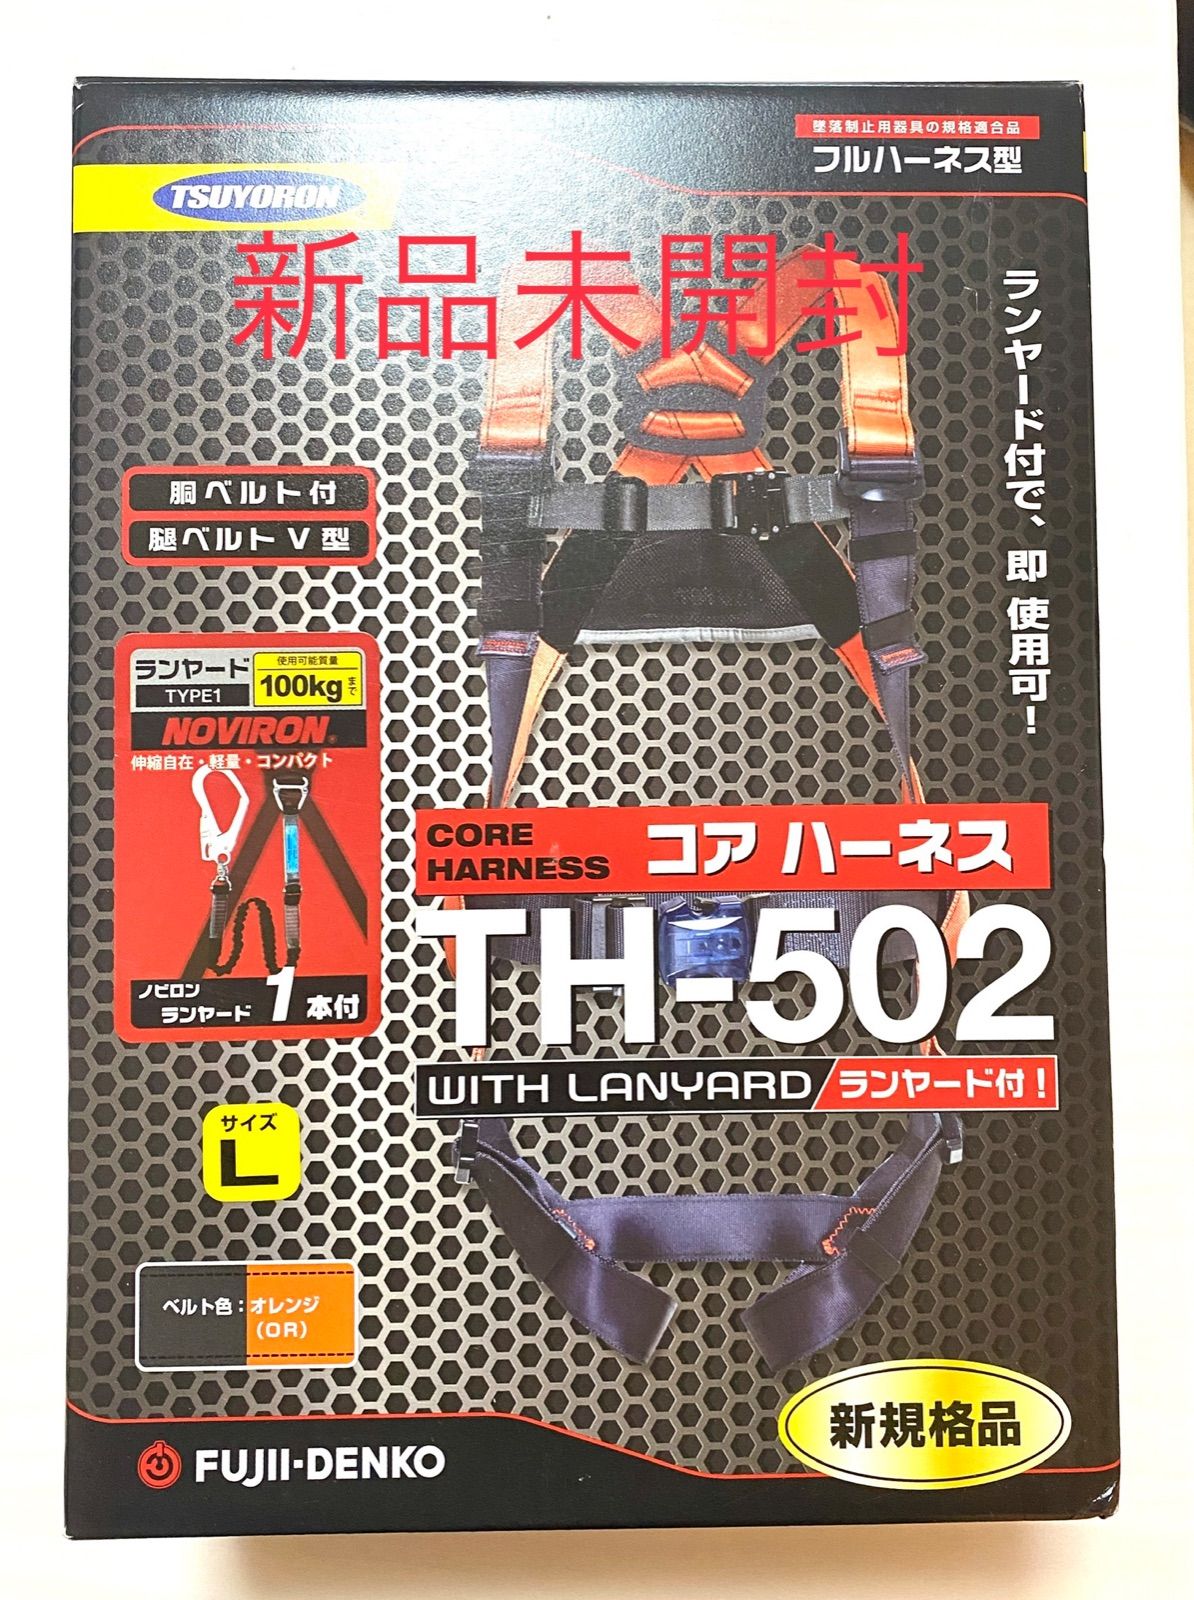 大人気! 藤井電工 TH-502 新規格フルハーネスMサイズ ツインランヤード付き